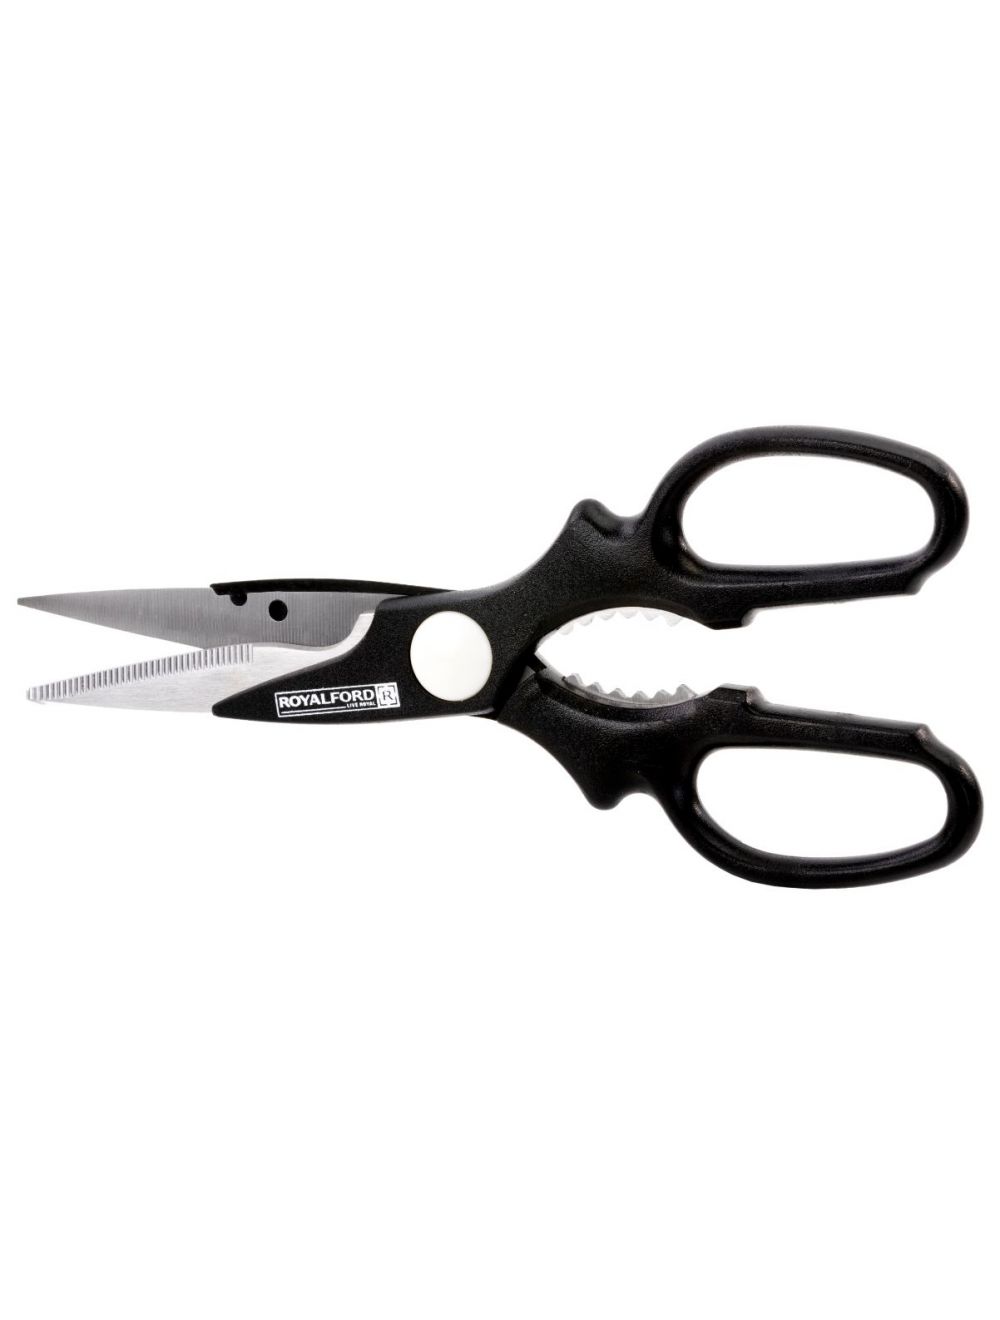 Royalford RF5839 Stainless Steel Kitchen Scissors | 2-in-1 Kitchen Scissor